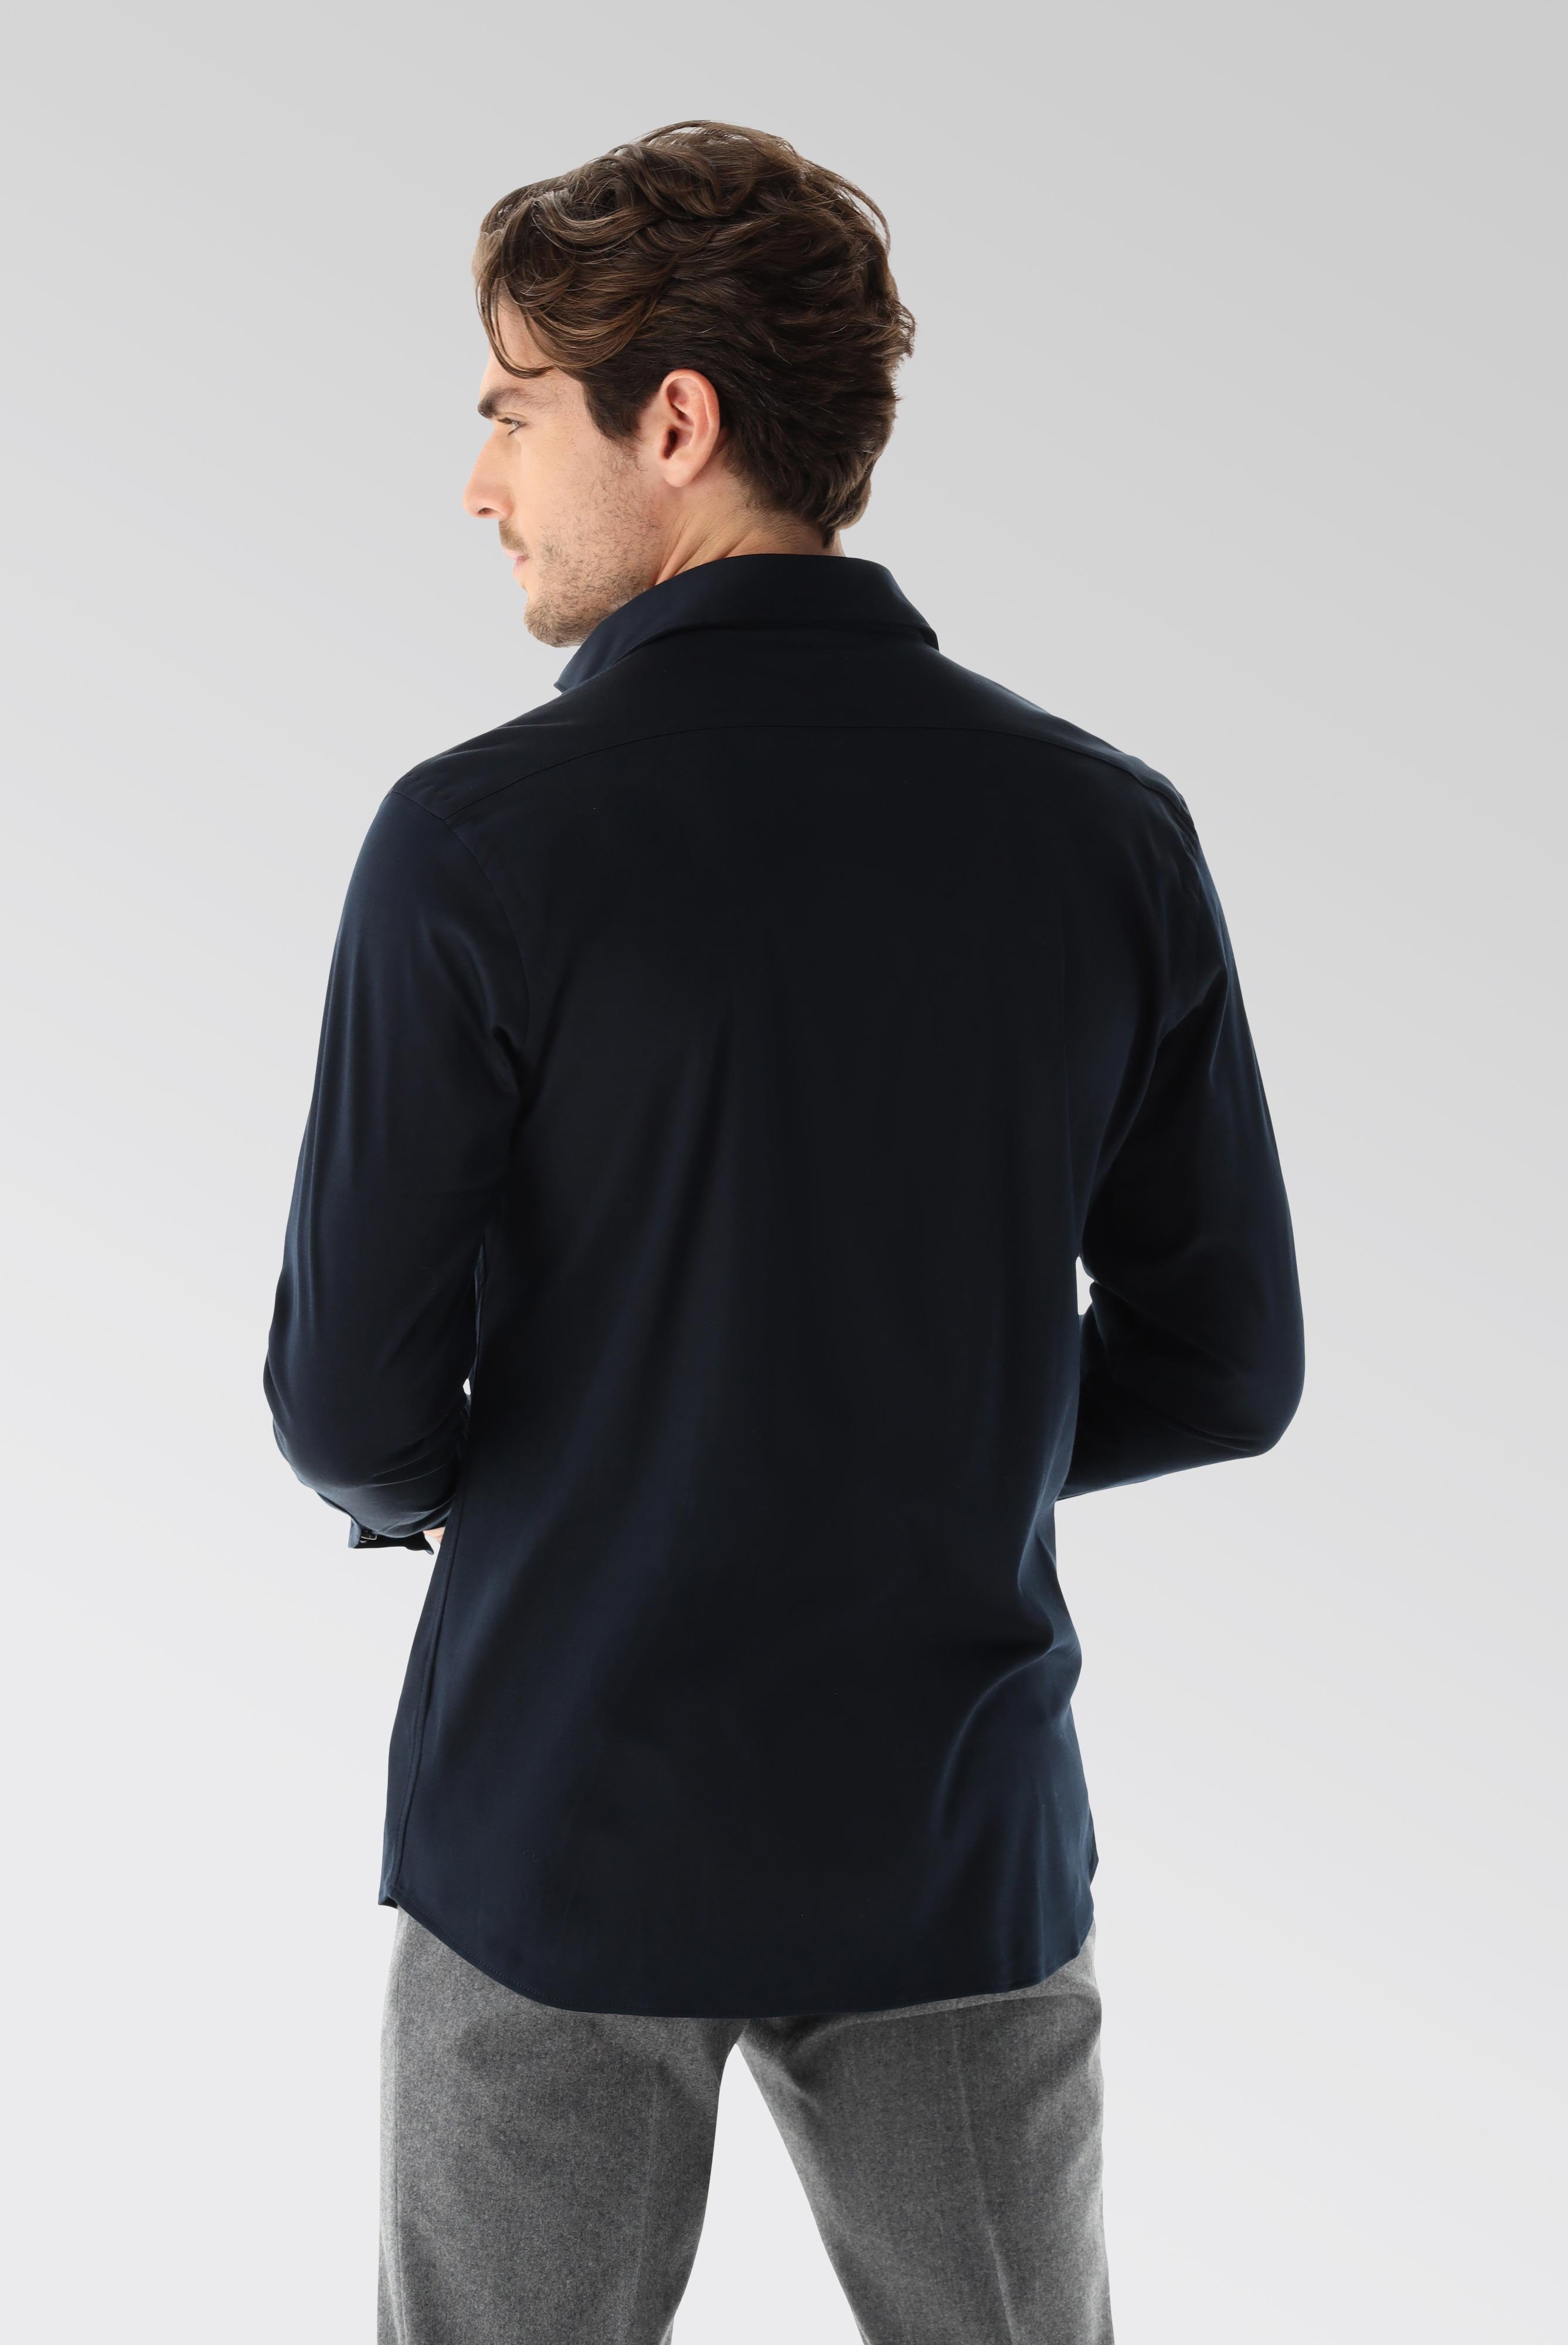 Bügelleichte Hemden+Jersey Hemd mit glänzender Optik Tailor Fit+20.1683.UC.180031.790.X4L